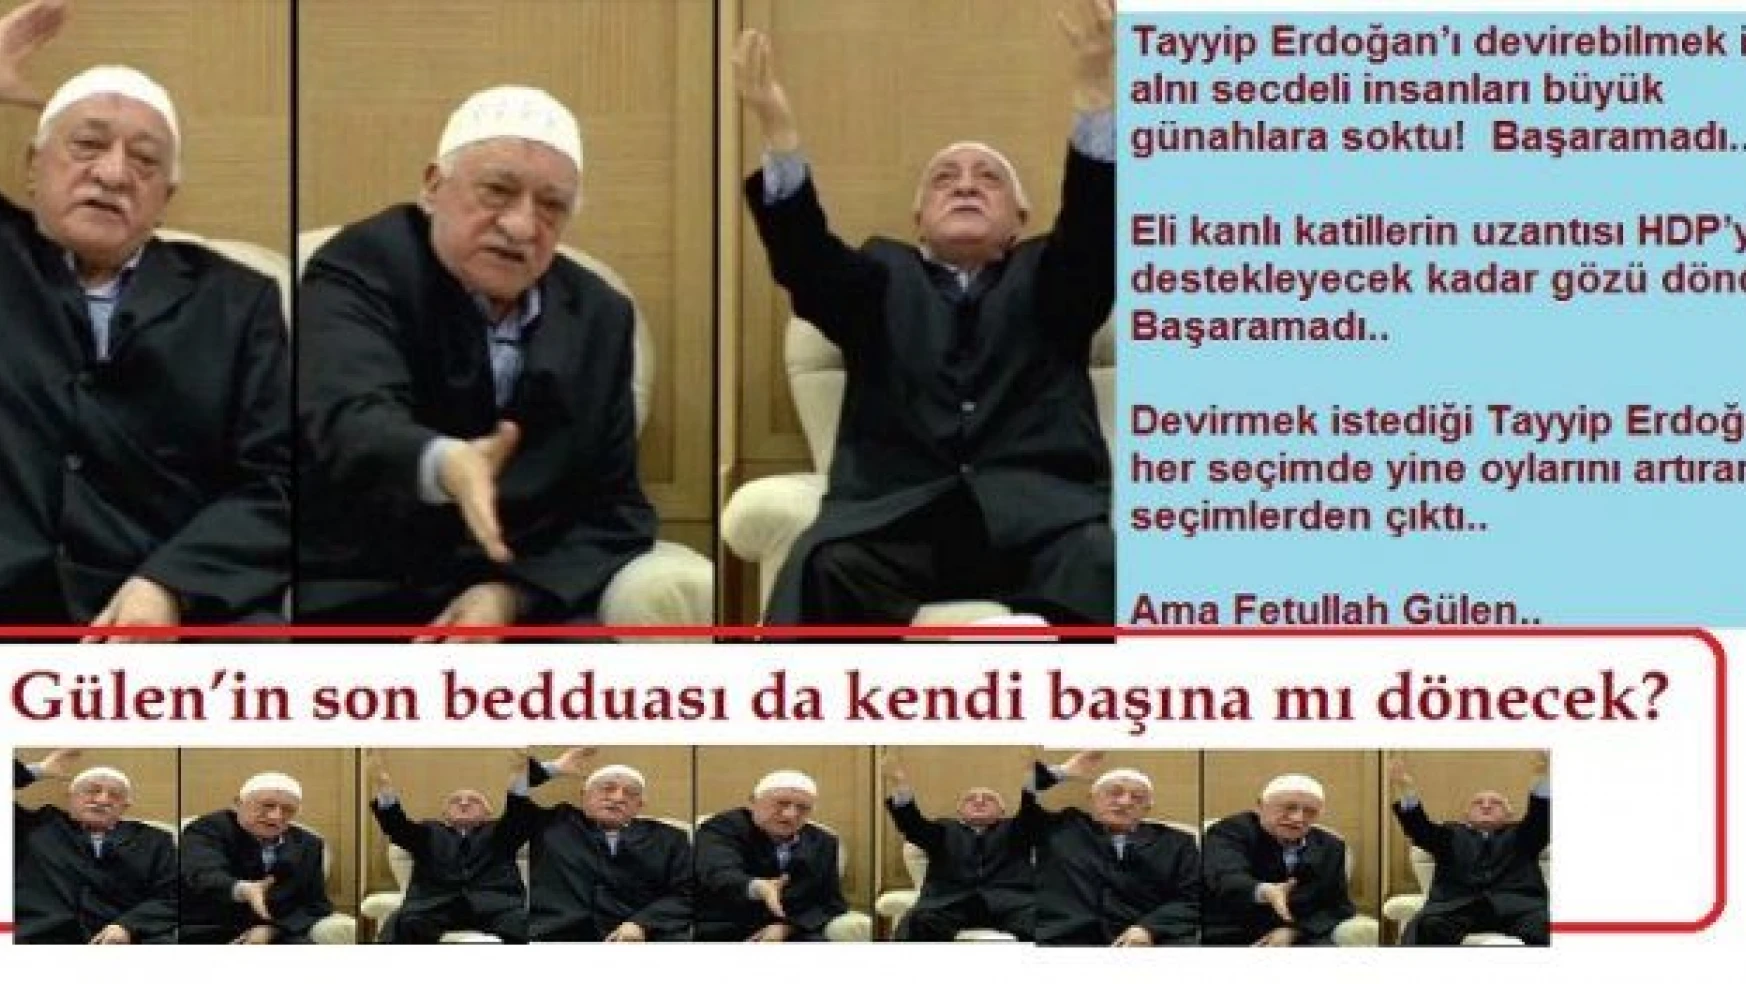 Fetullah Gülen'in son bedduası da kendi başına mı dönecek?